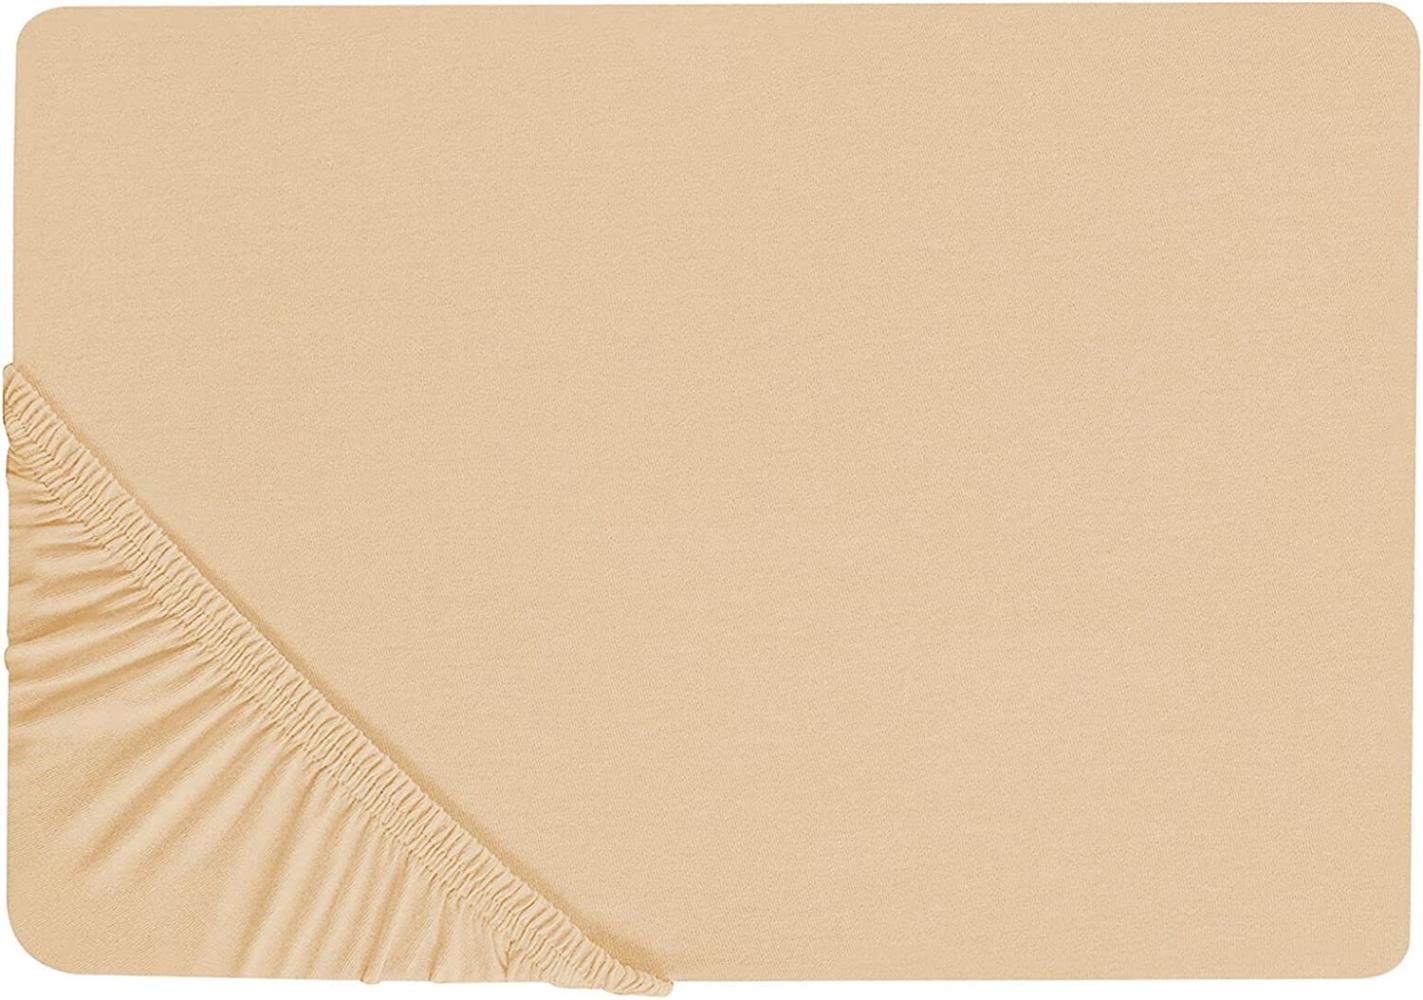 Spannbettlaken Baumwolle sandbeige 160 x 200 cm JANBU Bild 1